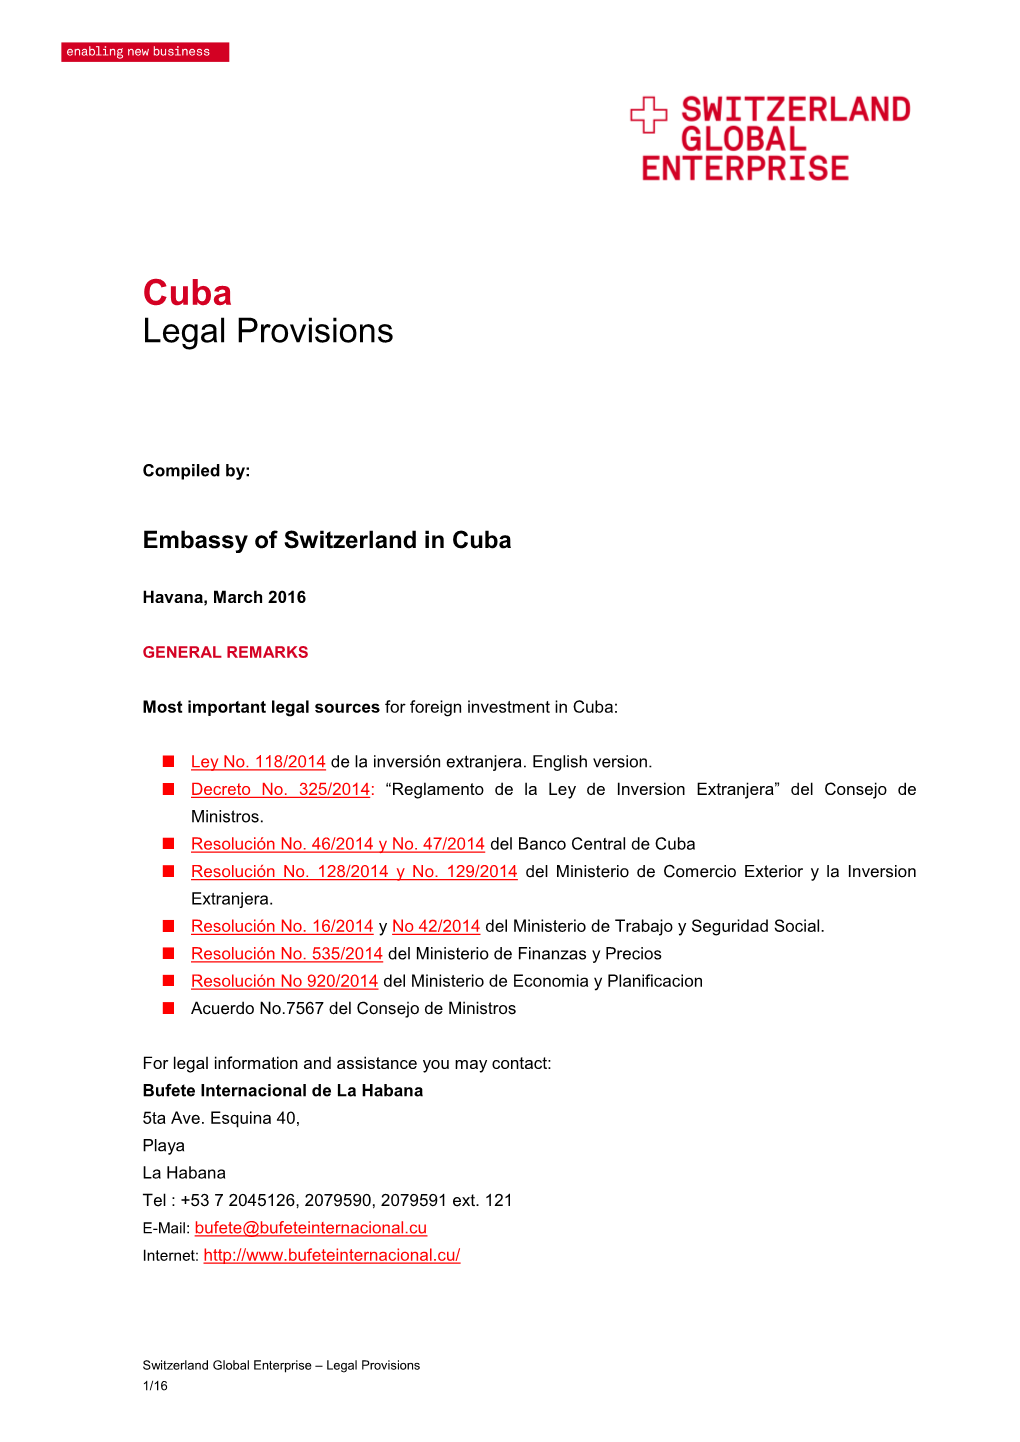 Cuba Legal Provisions